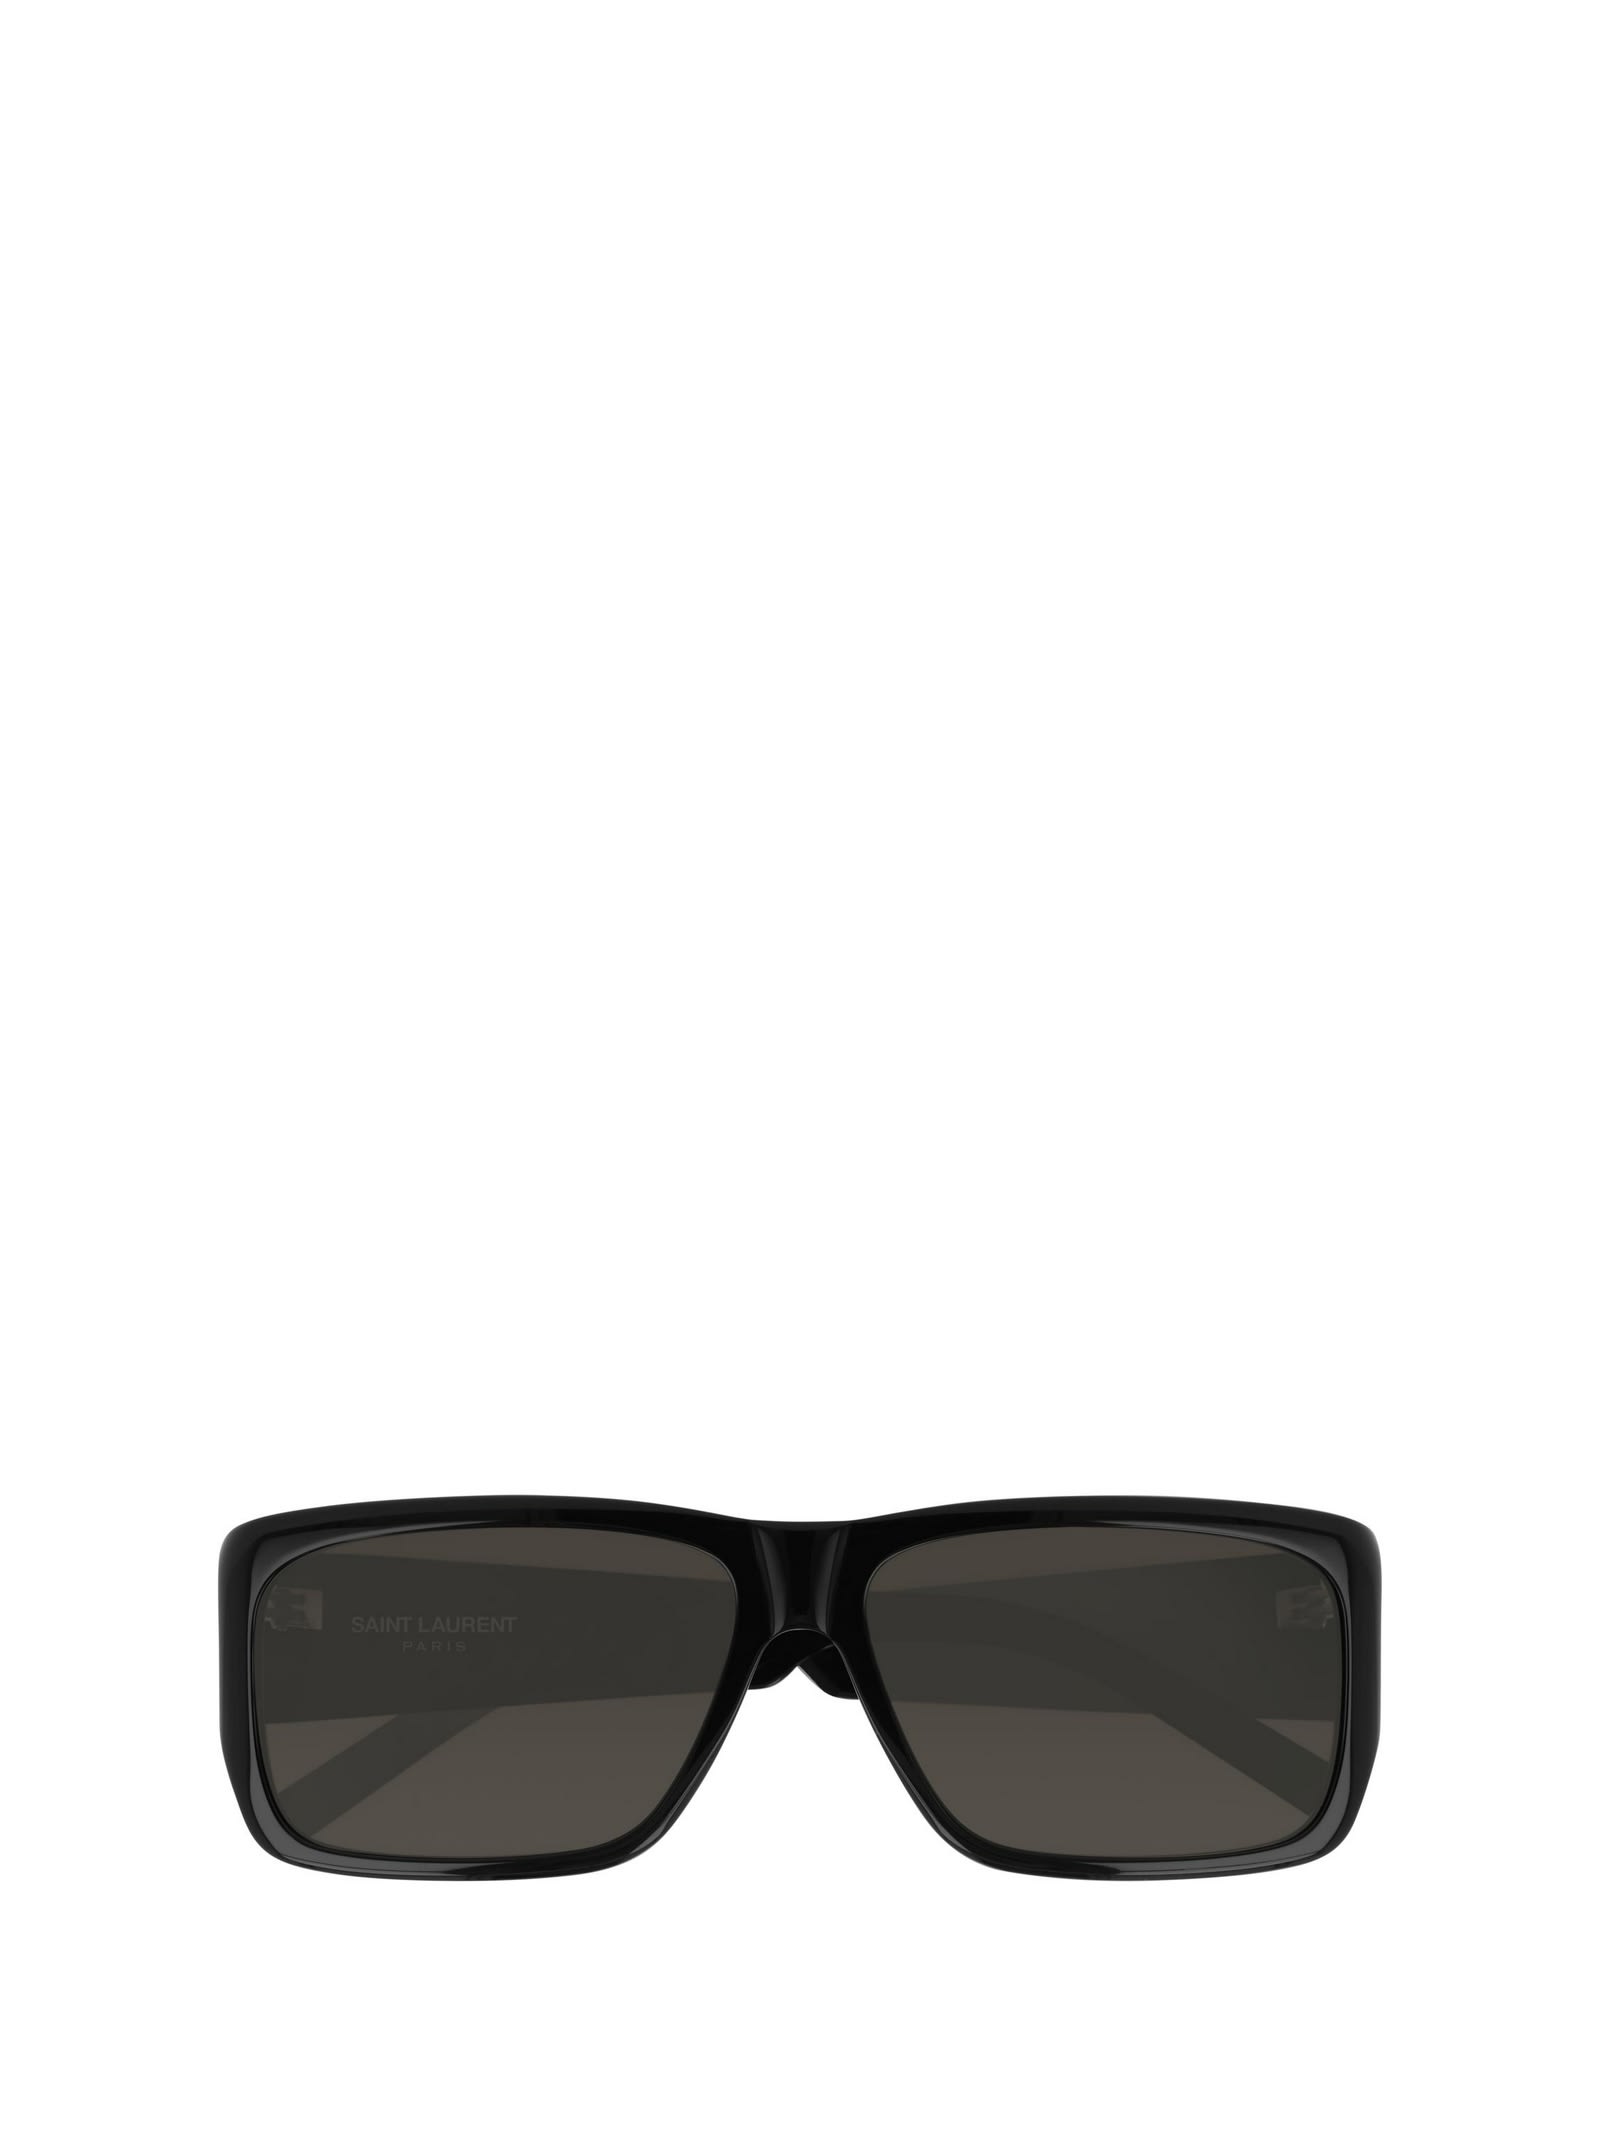 Saint Laurent Eyewear Saint Laurent Sl 366 Black Sunglasses